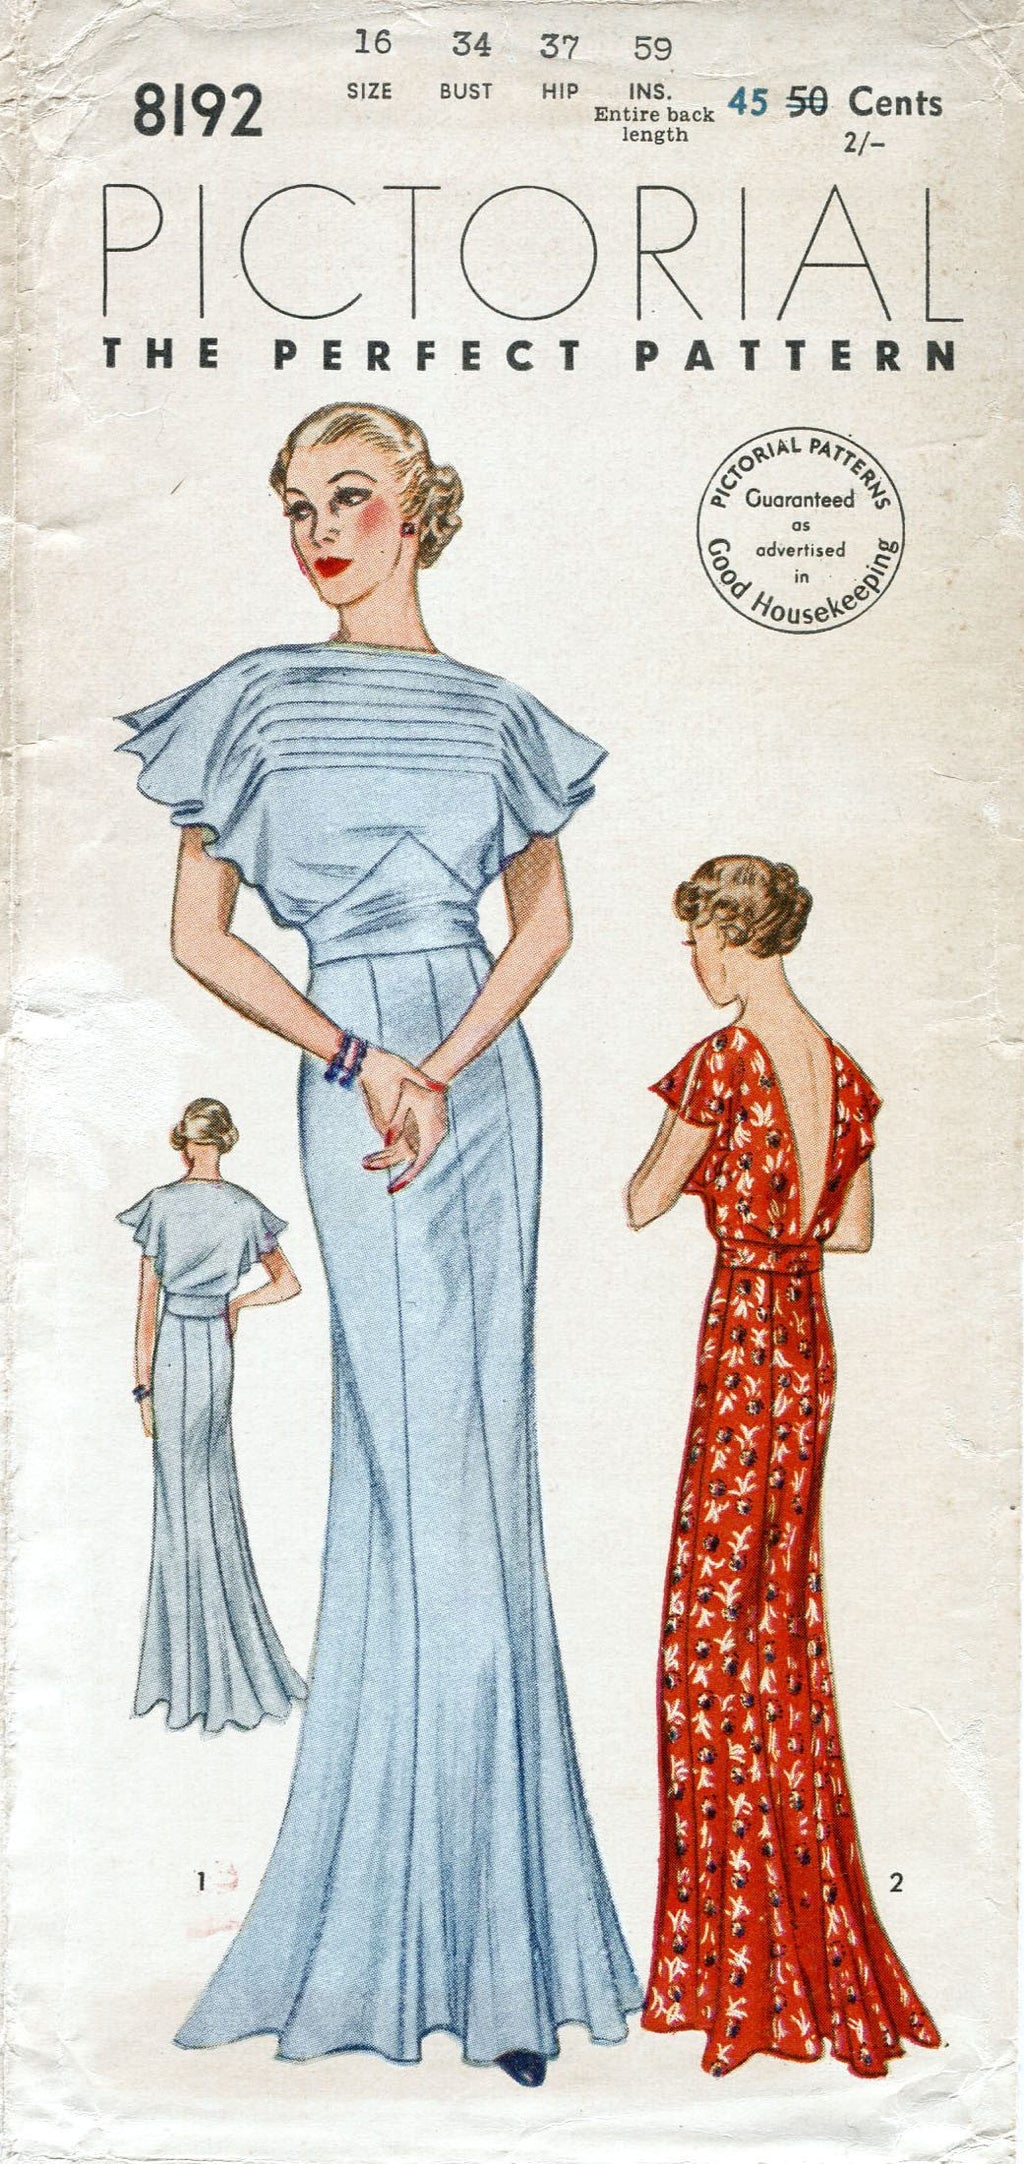 1930 evening dress